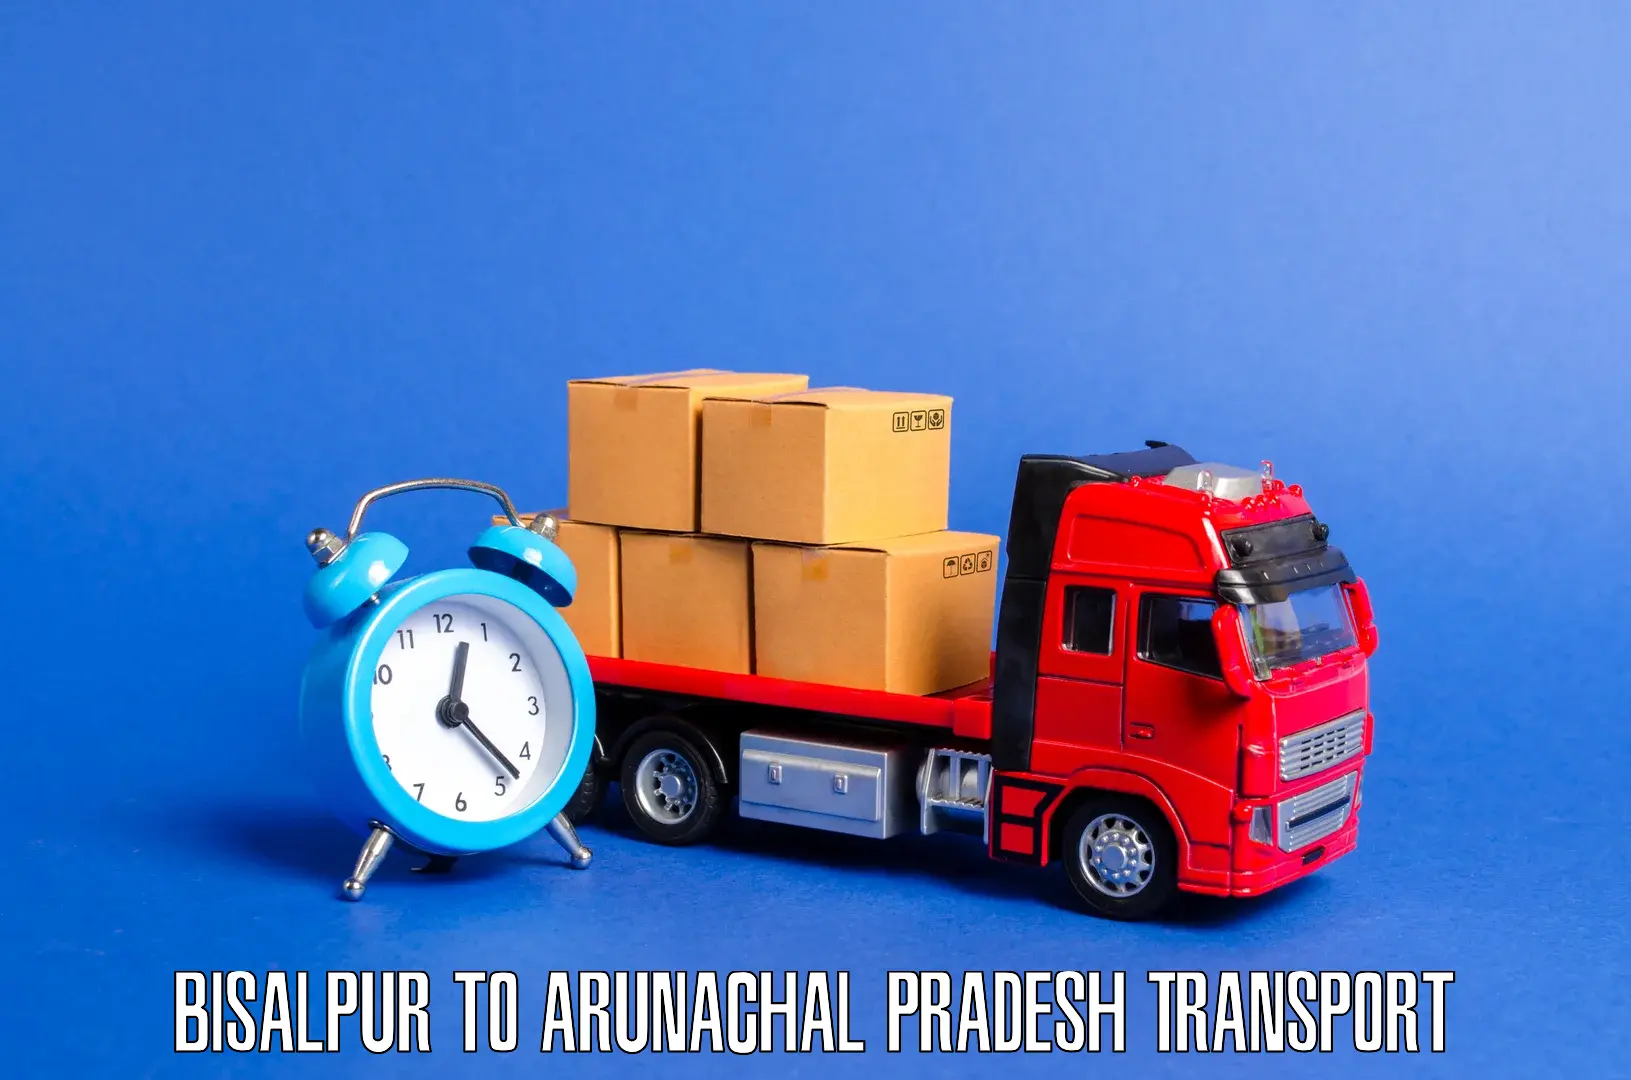 Parcel transport services Bisalpur to Itanagar